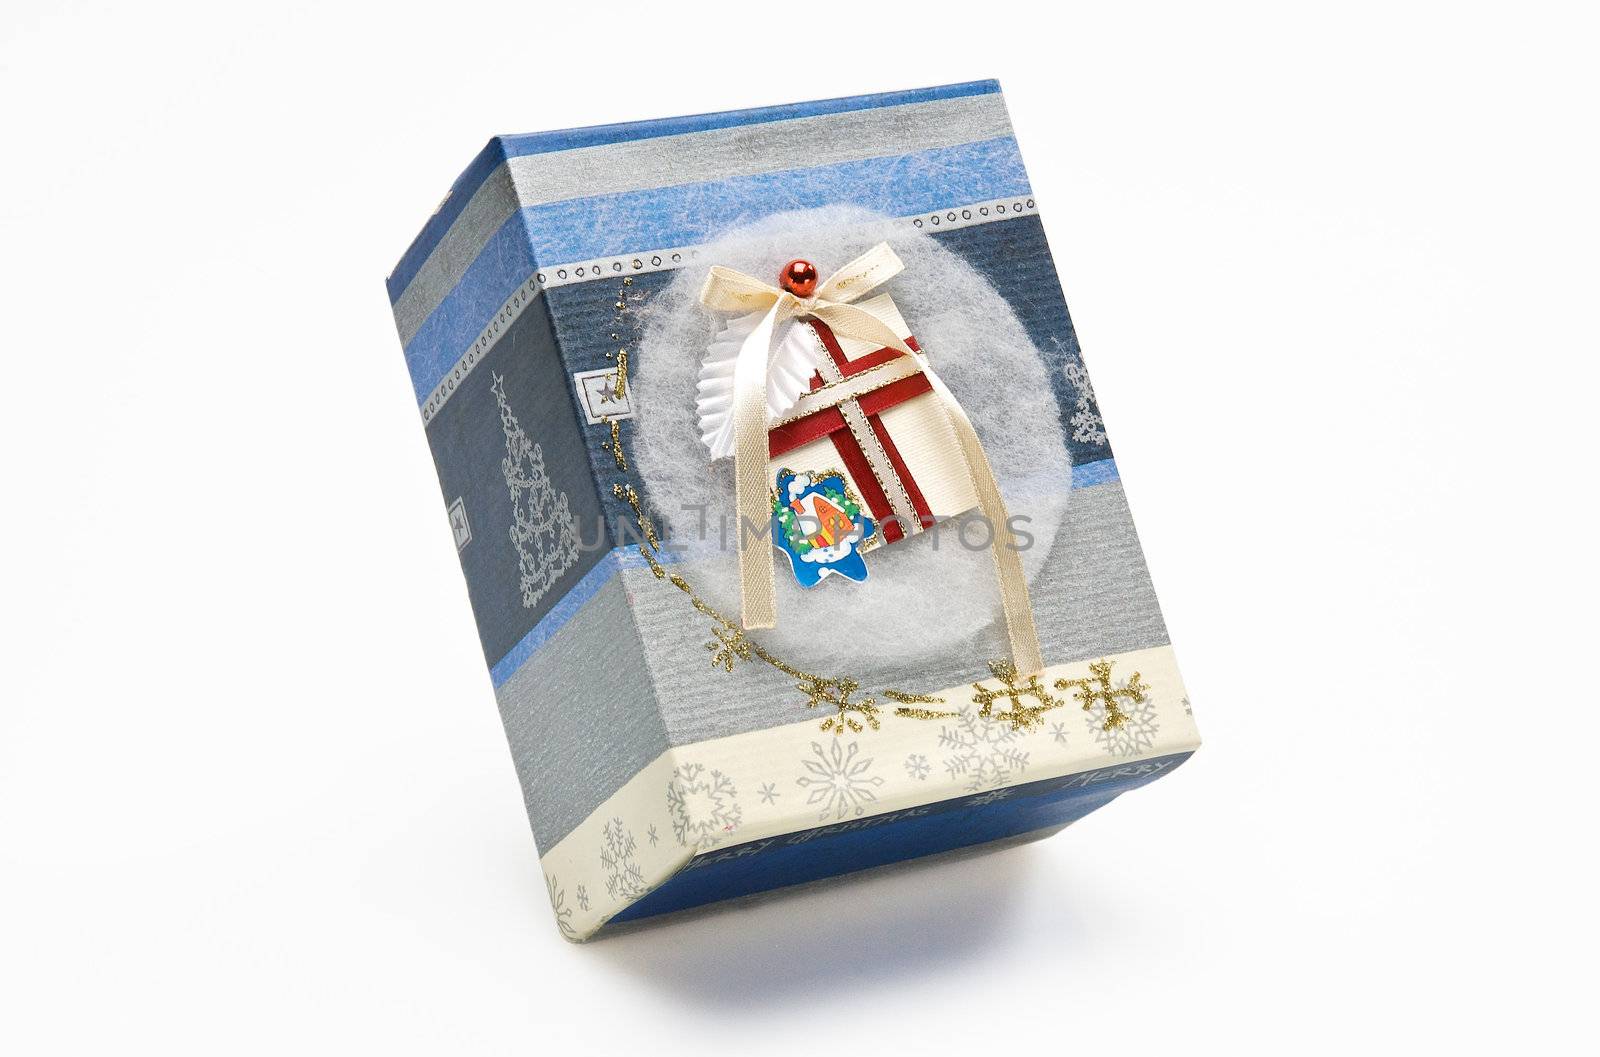 Decorative Christmas gift box isolated on white background